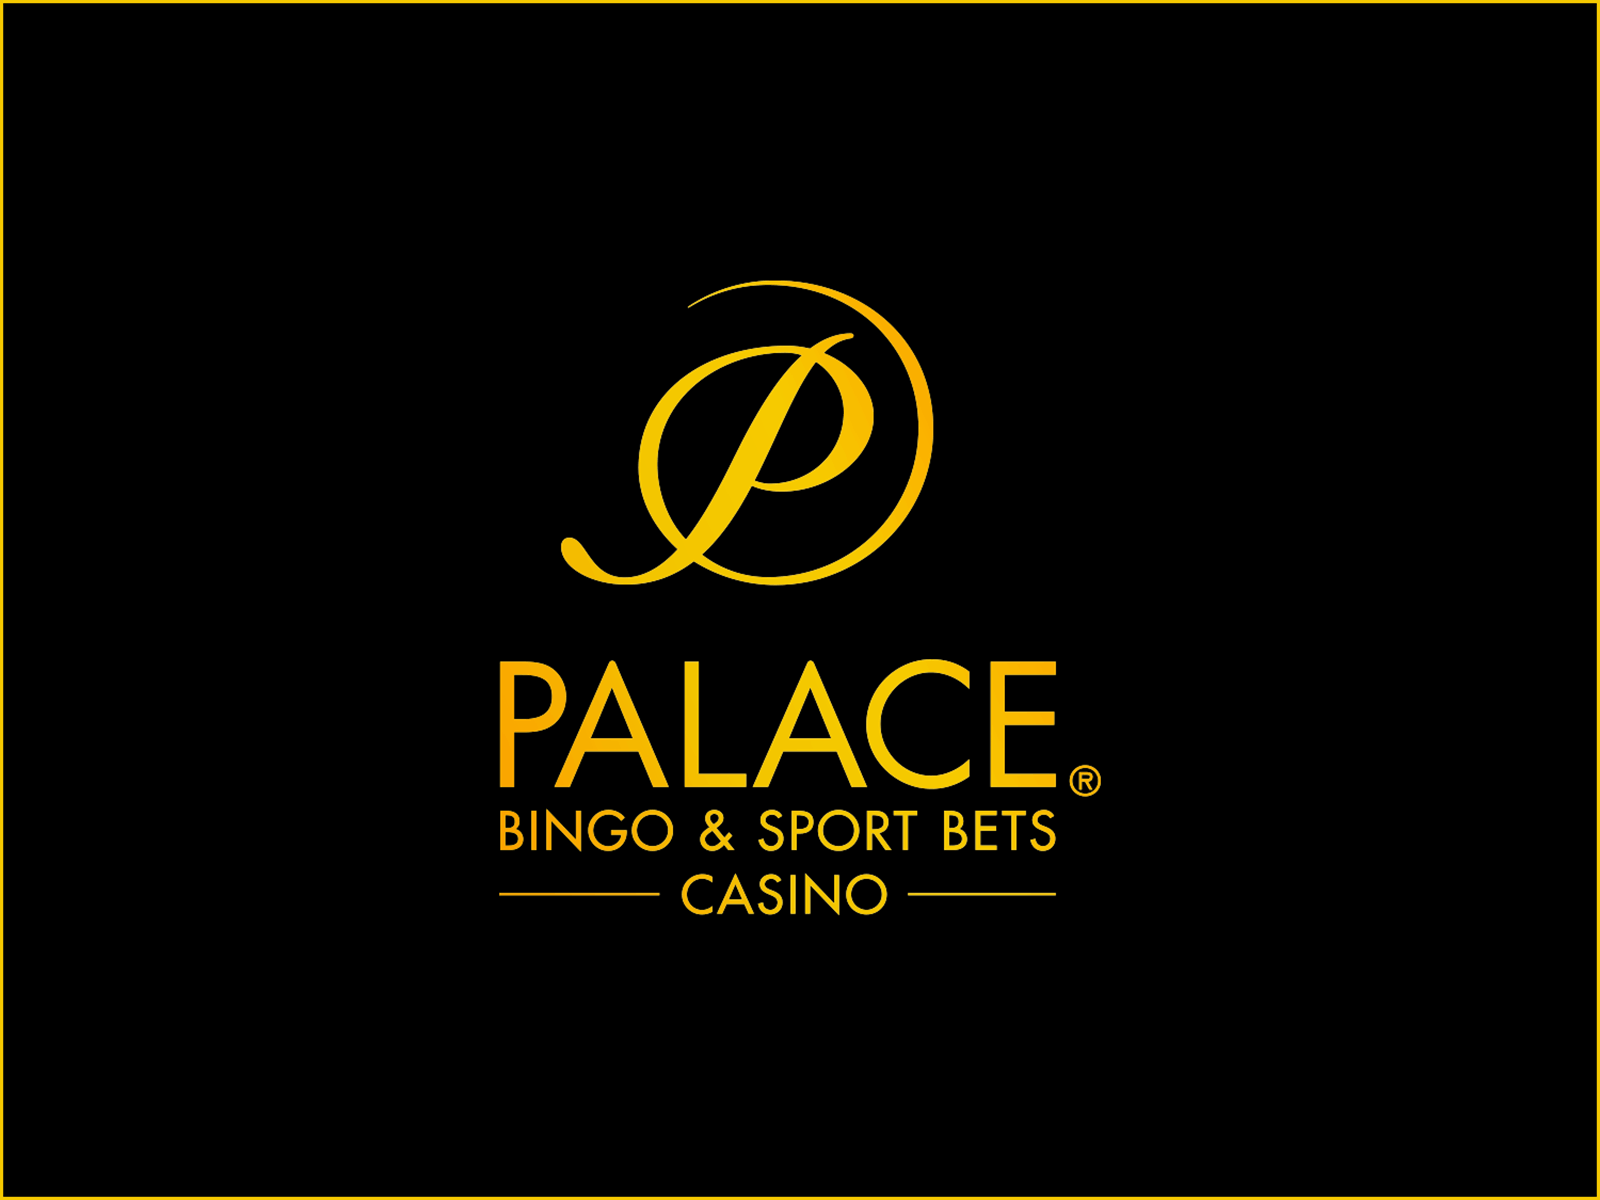 Palace Casino Logo - Palace Bingo & Sport Bets Casino